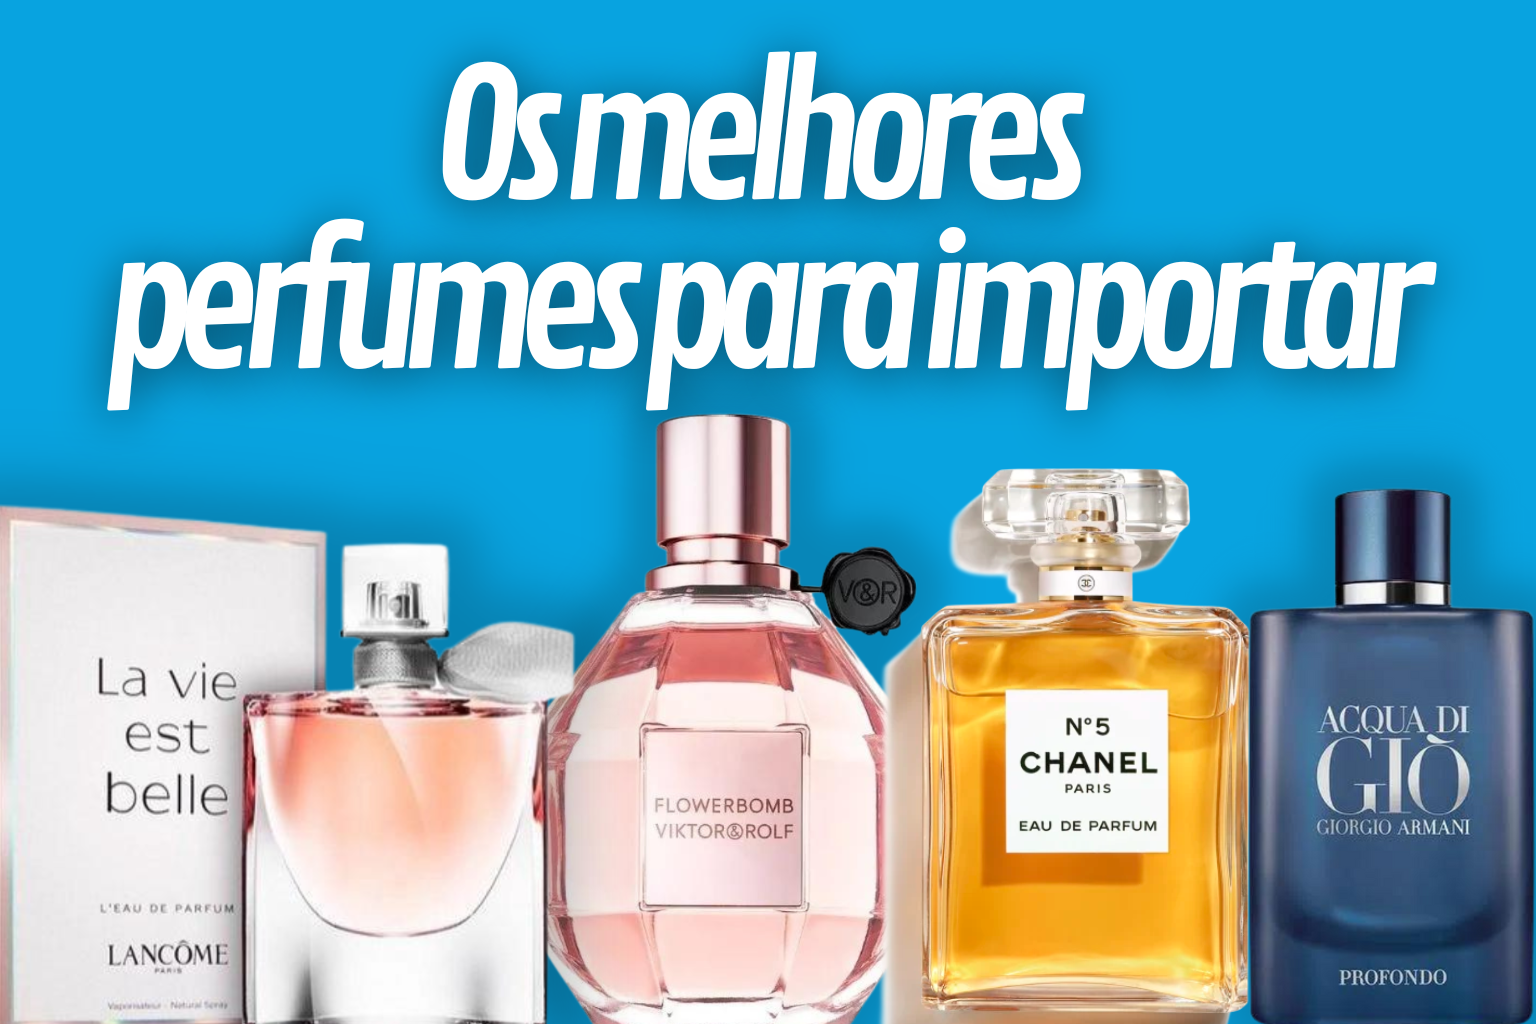 Vea cuáles son los 10 perfumes importados más vendidos del momento